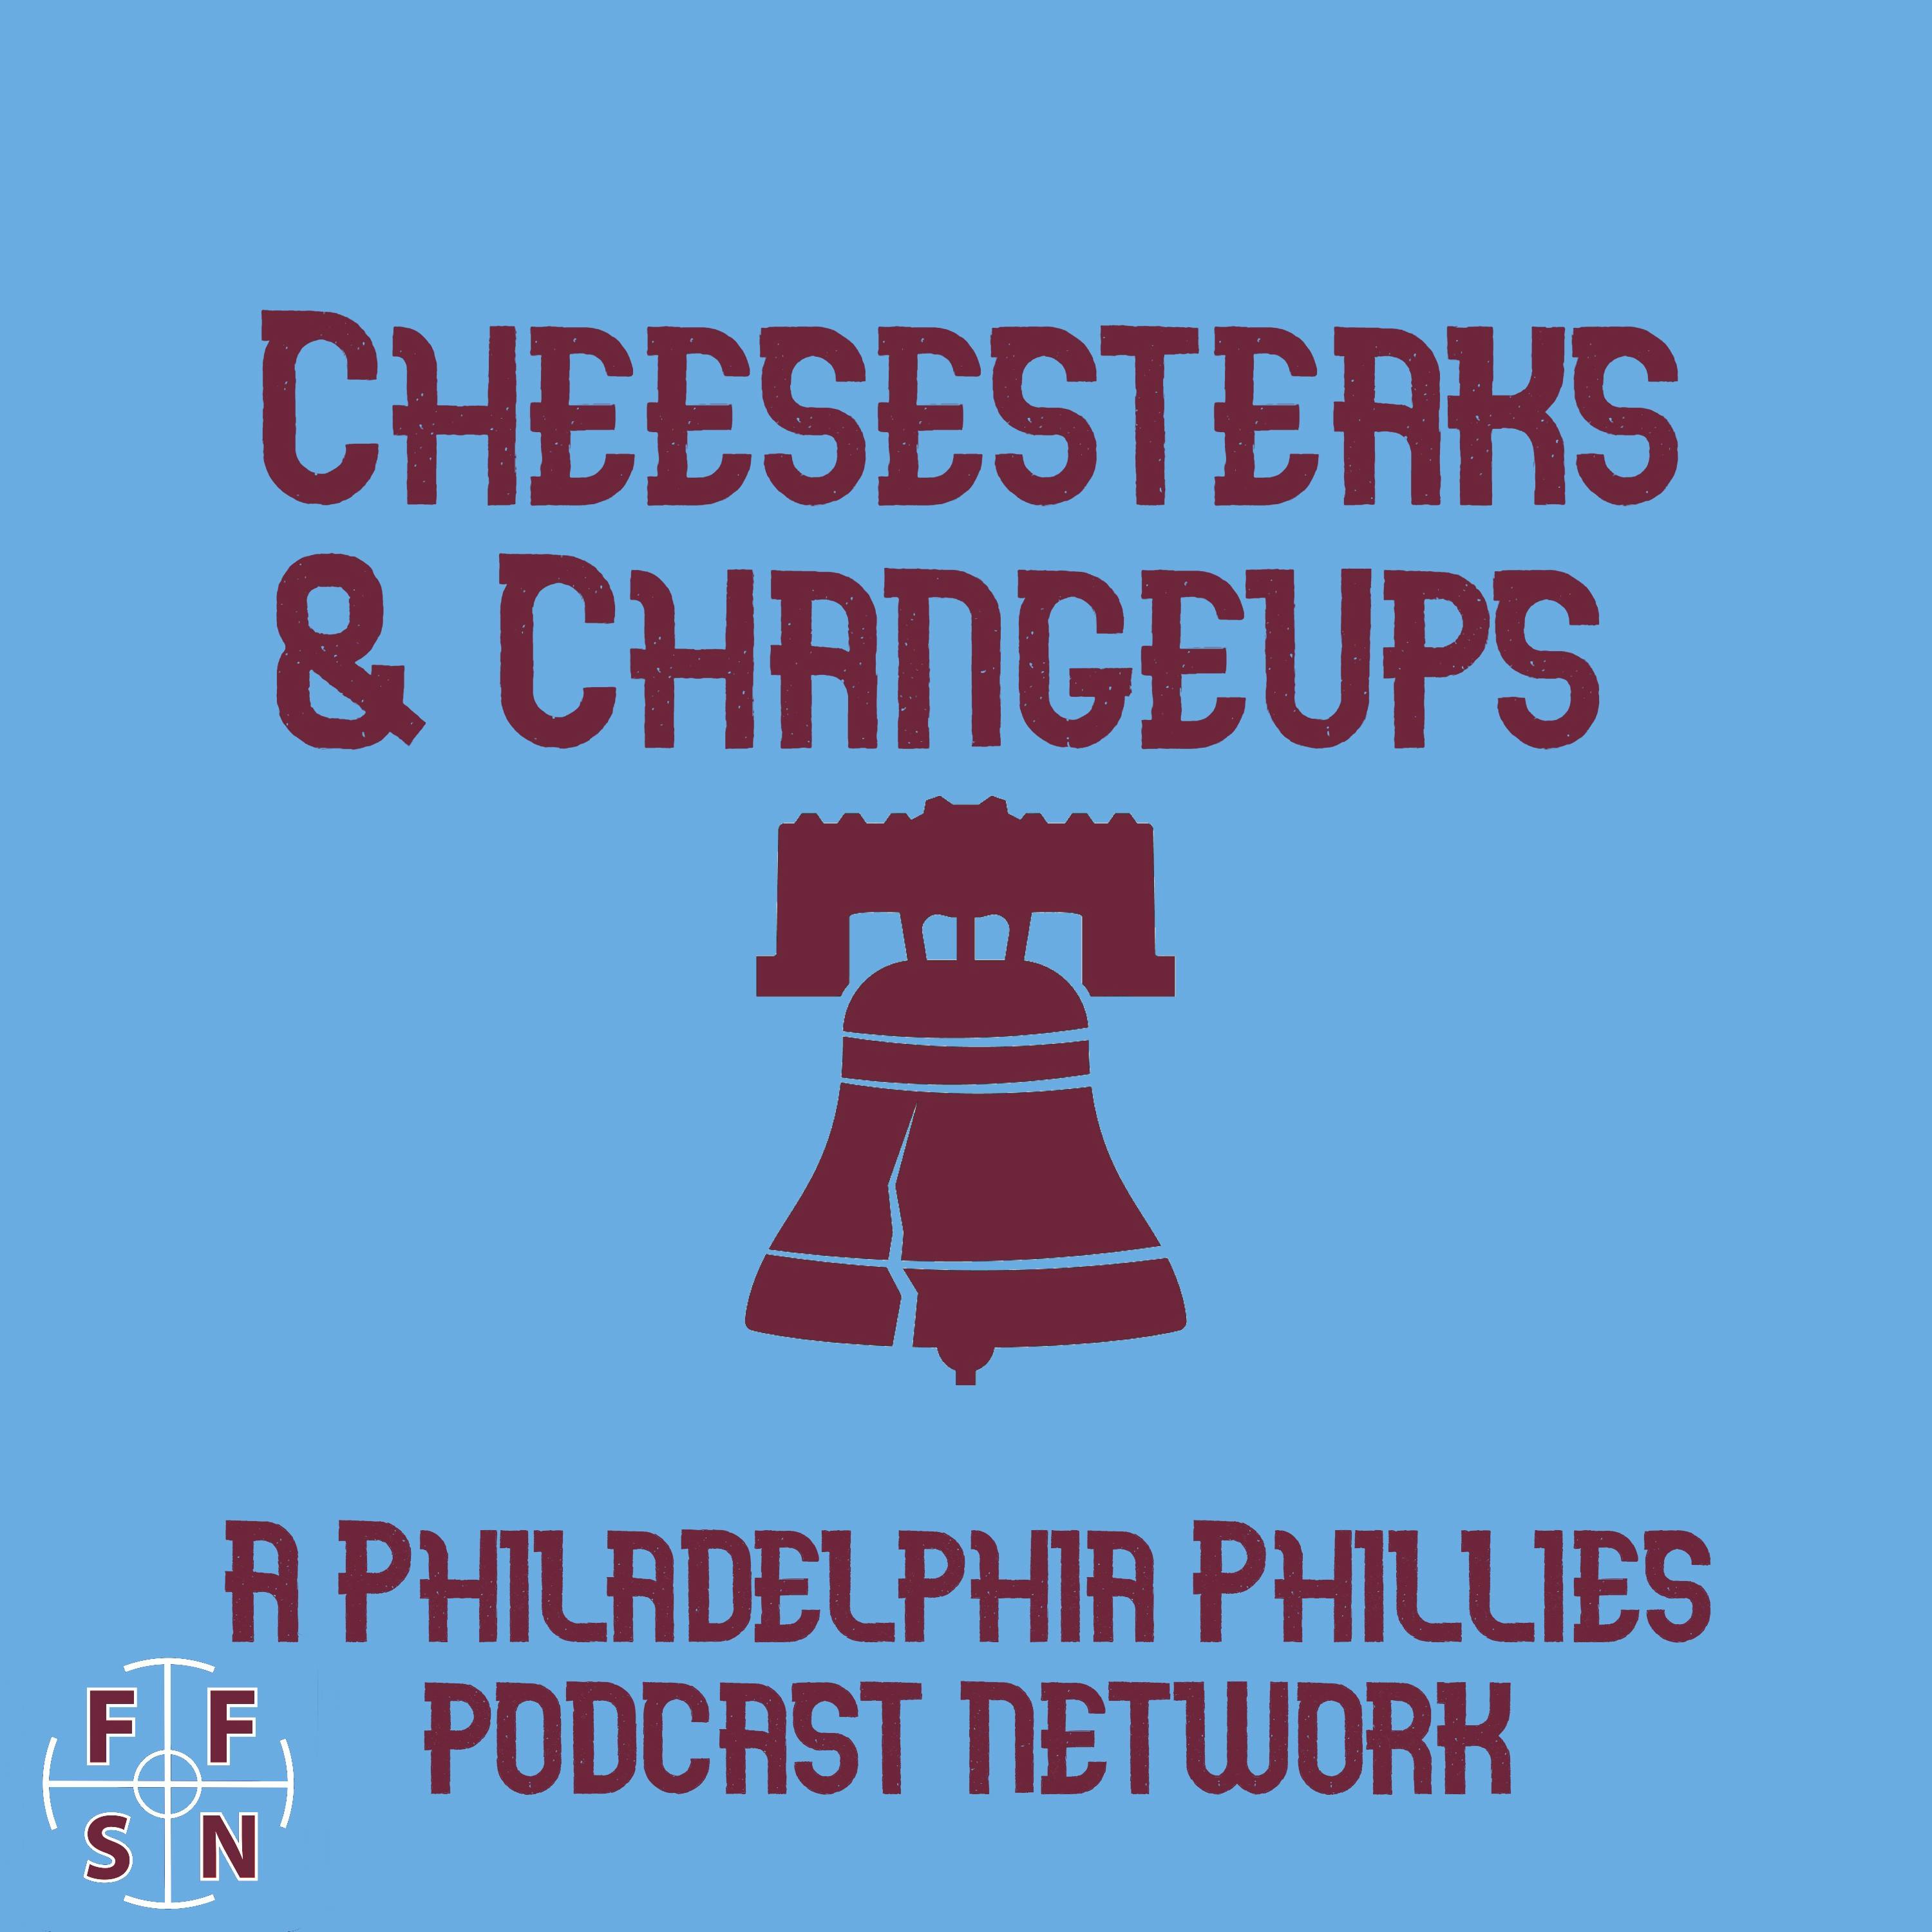 Philliedelphia: Philadelphia Phillies Podcasts, News, and Rumors